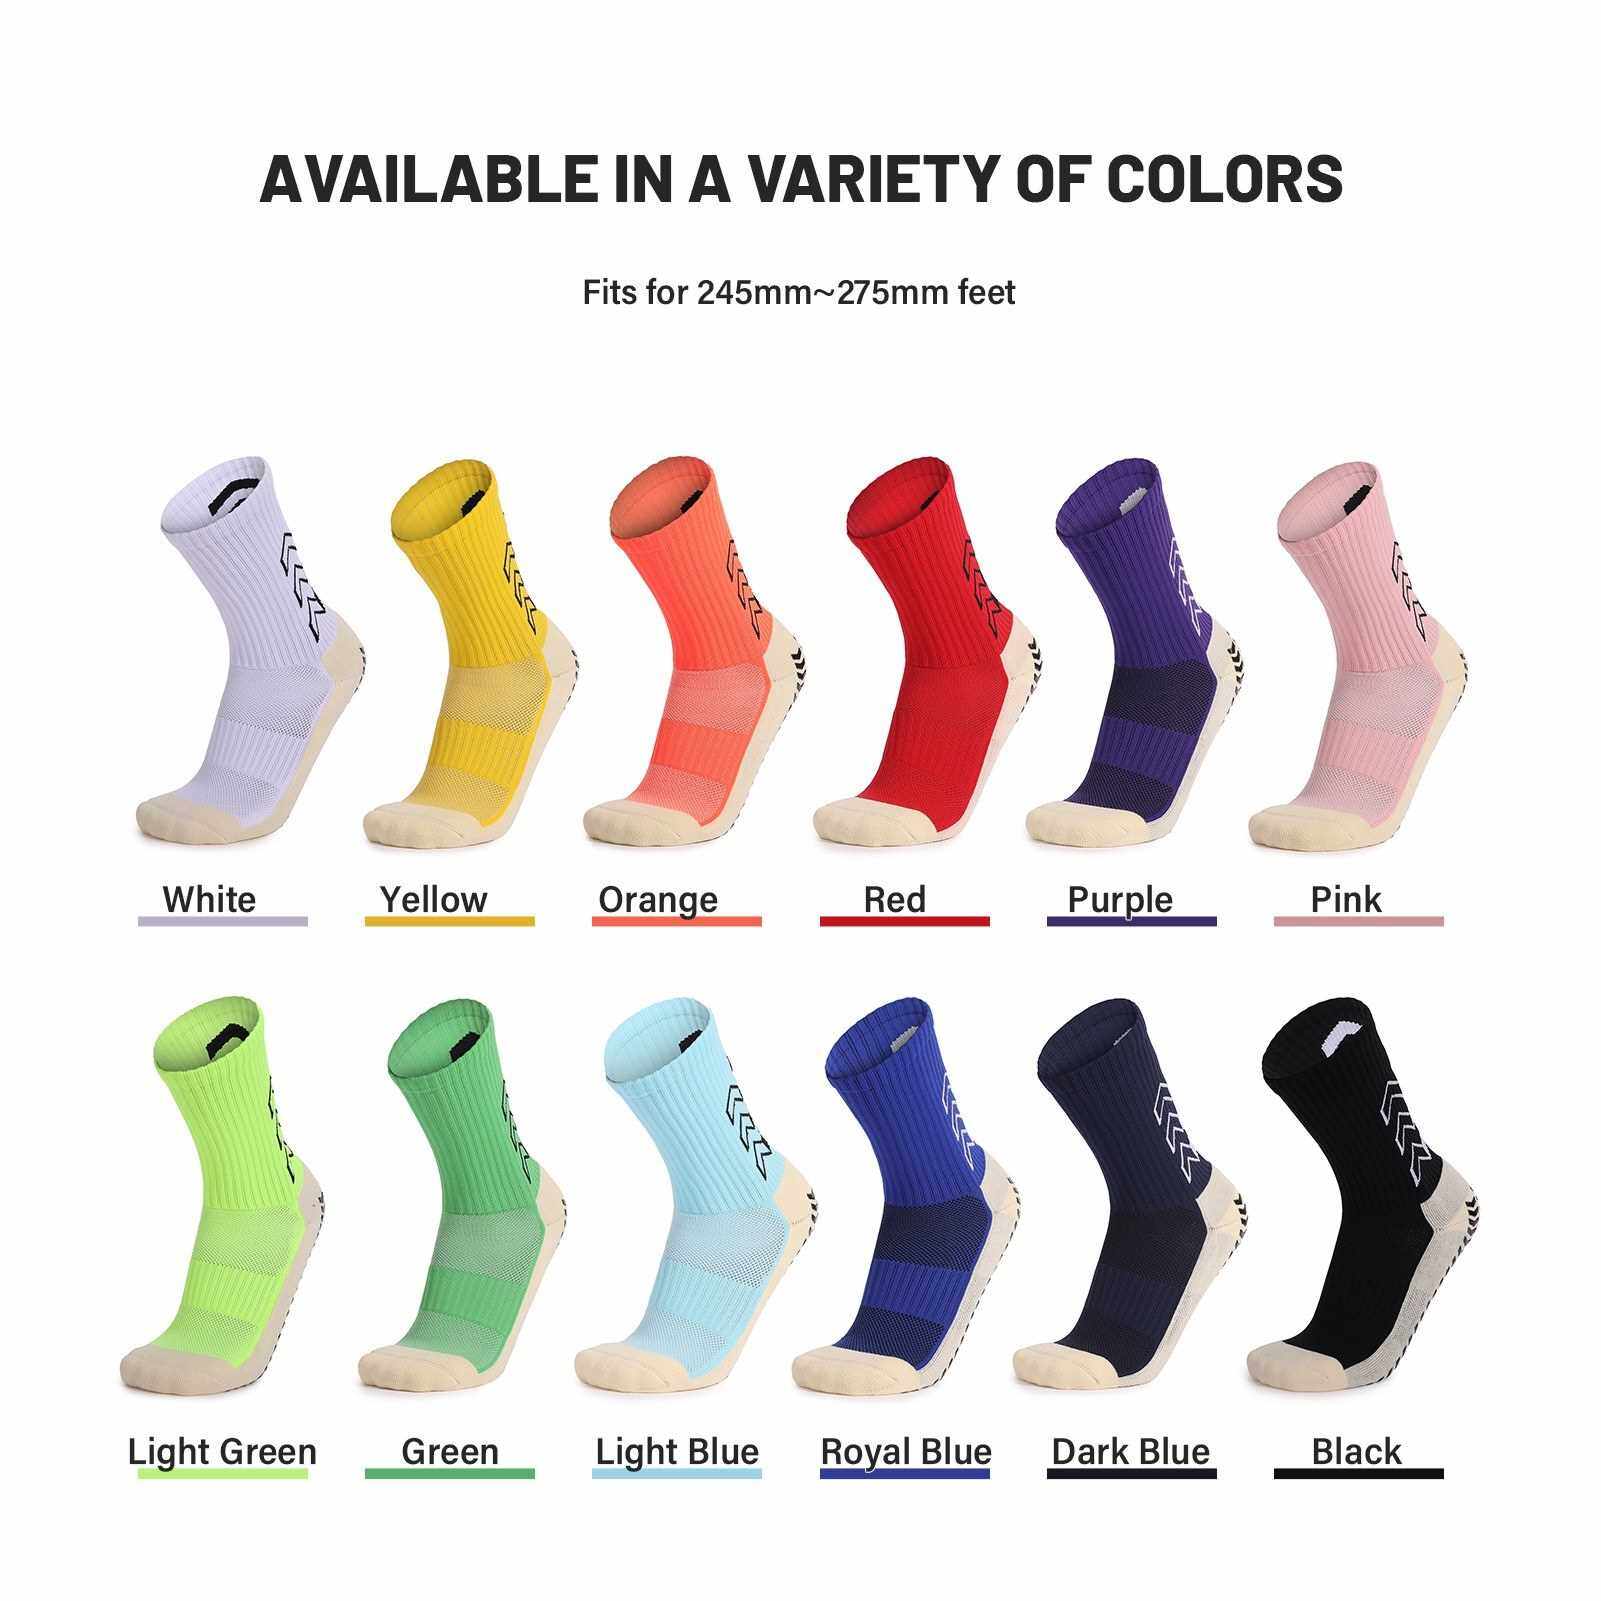 BEST SELLER Sport Cushioned Socks Non Slip Grip for Basketball Soccer Ski Cycling Athletic Socks (White)